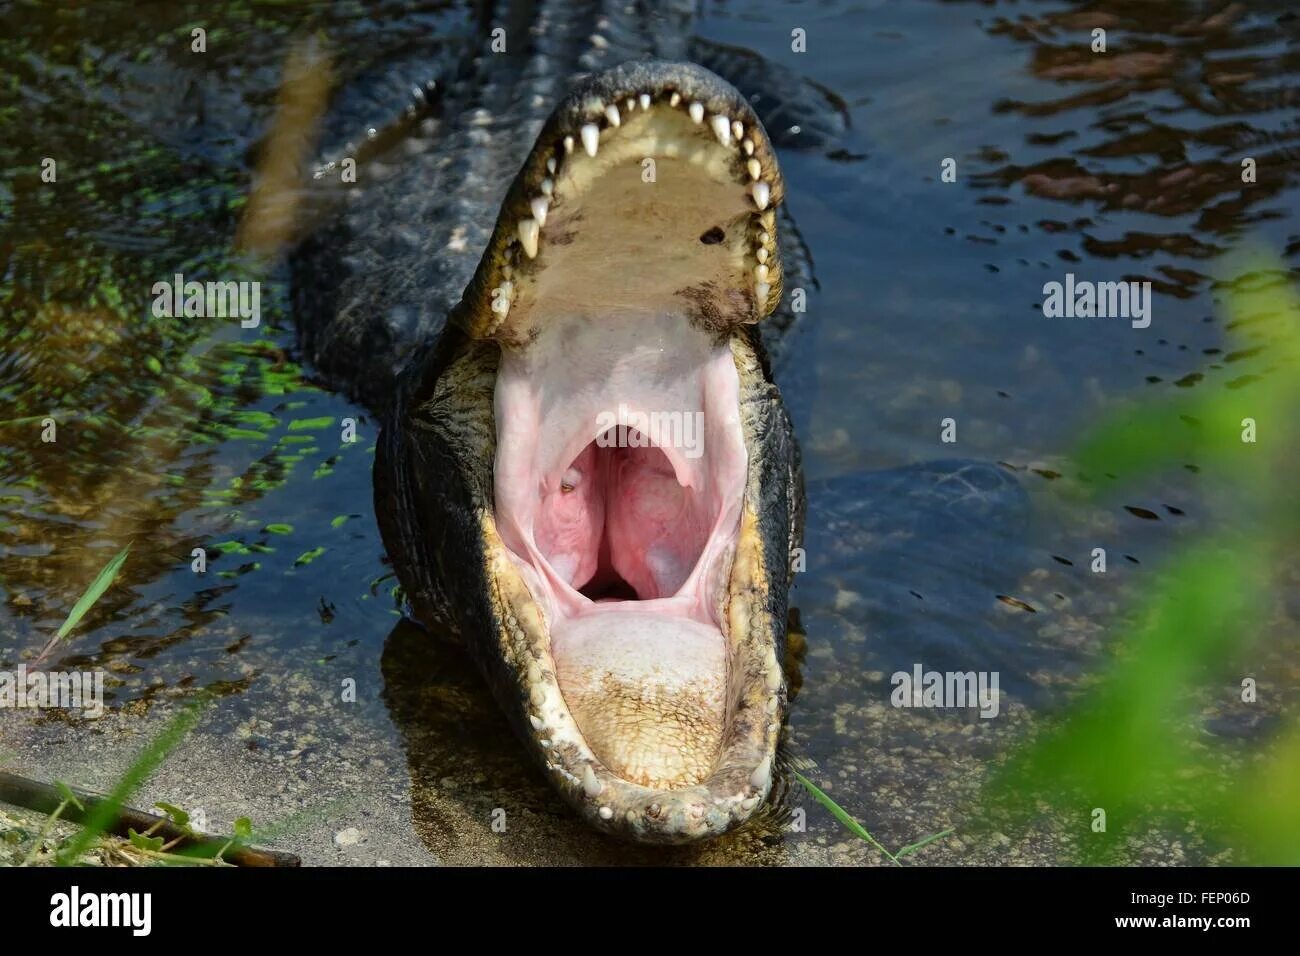 Крокодилы открывают рот. Крокодил с открытым ртом. Аллигатор с открытой пастью. Крокодил с раскрытой пастью. Крокодилы с открытыми ртами.